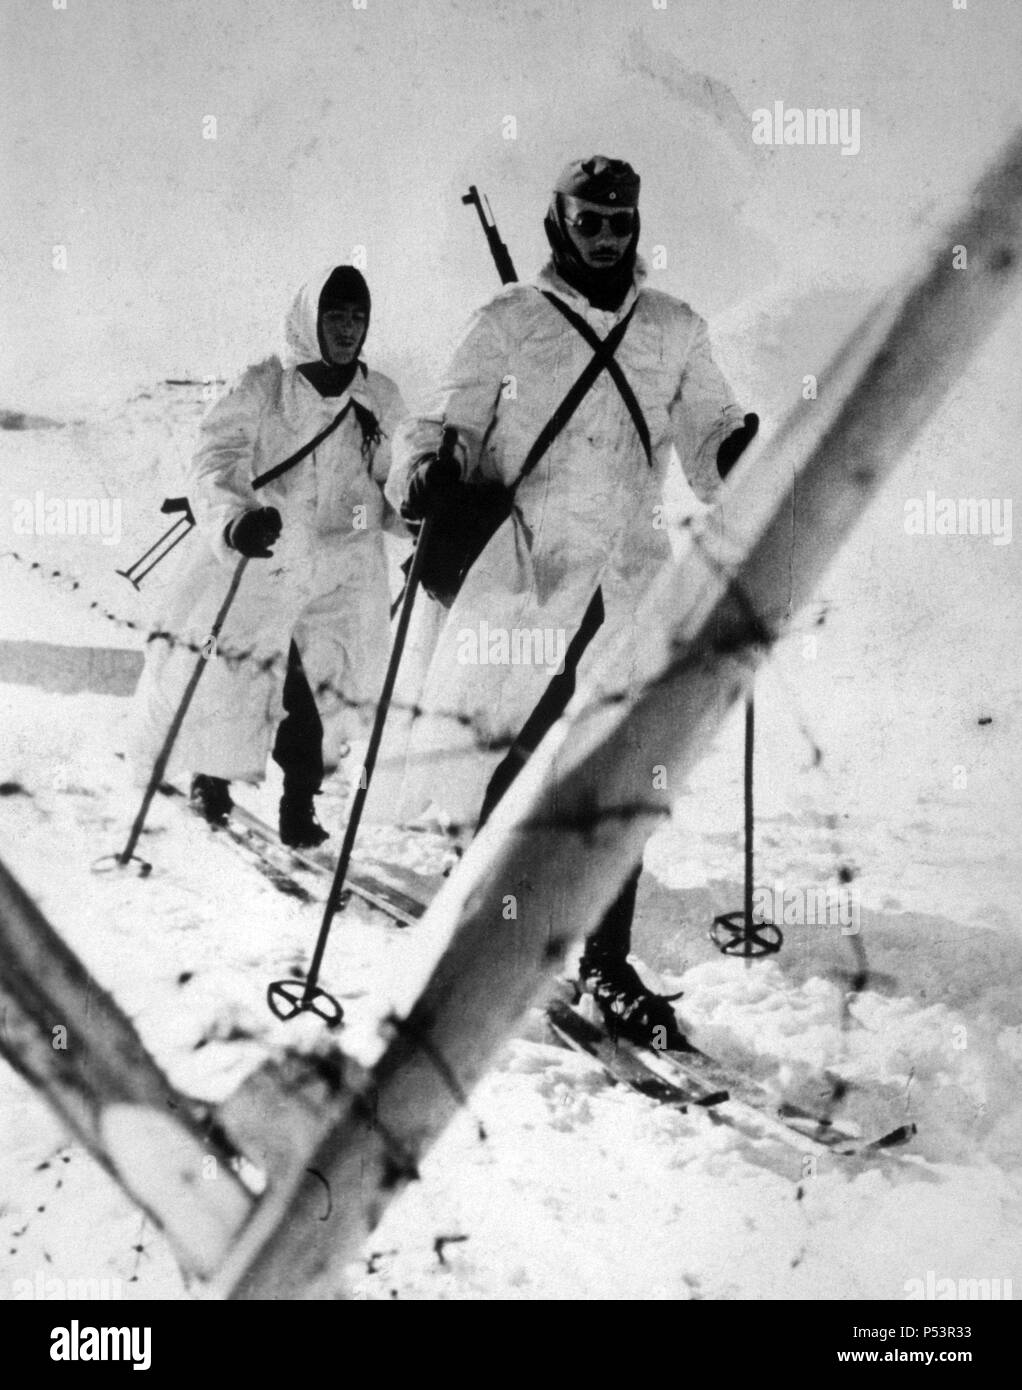 SEGUNDA GUERRA MUNDIAL (1939-1945) - División azul. Soldados esquiadores saliendo de patrulla. Invierno. Año 1942. Stock Photo